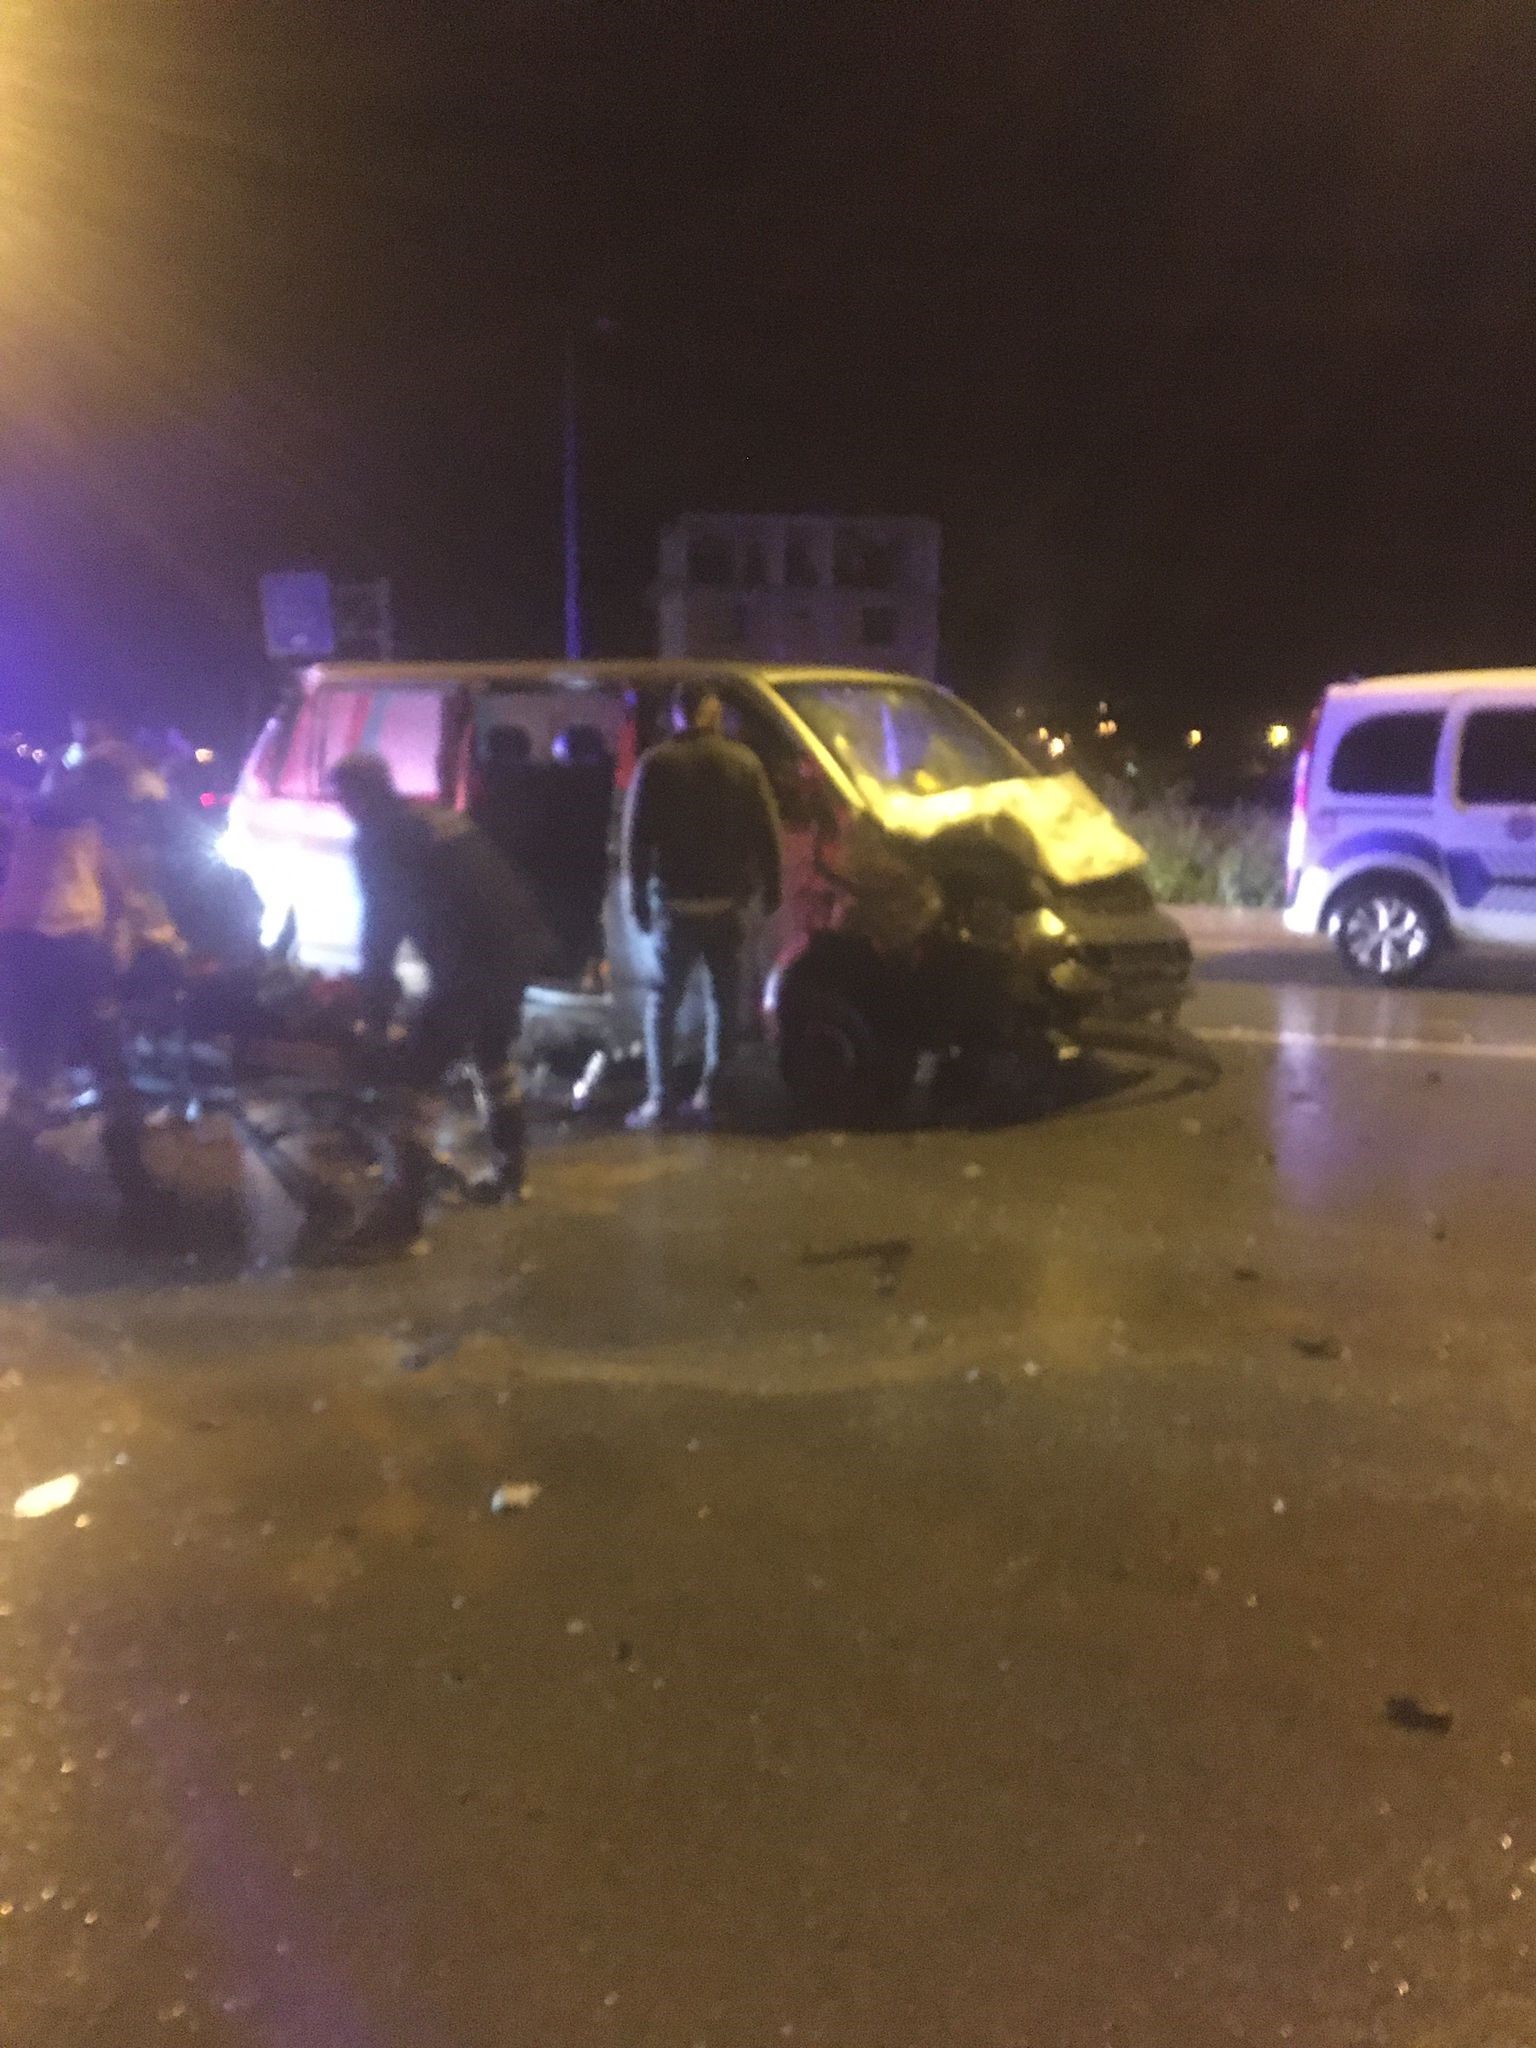 Denizli'nin Çivril ilçesinde otomobil ile minibüsün çarpışması sonucu meydana gelen kazada 3 kişi hayatını kaybetti.